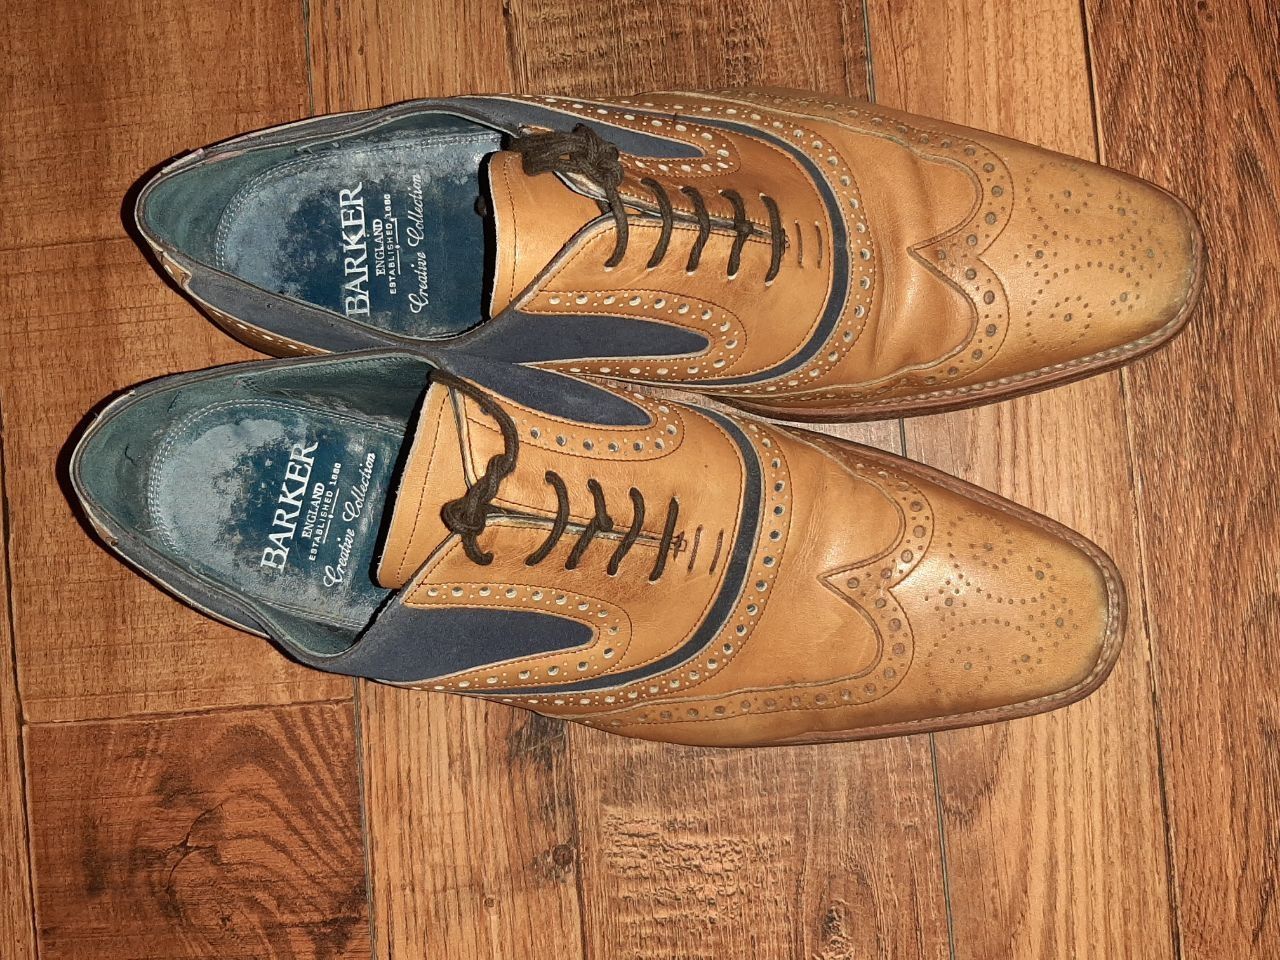 Кожаные мужские туфли BARKER из колекции